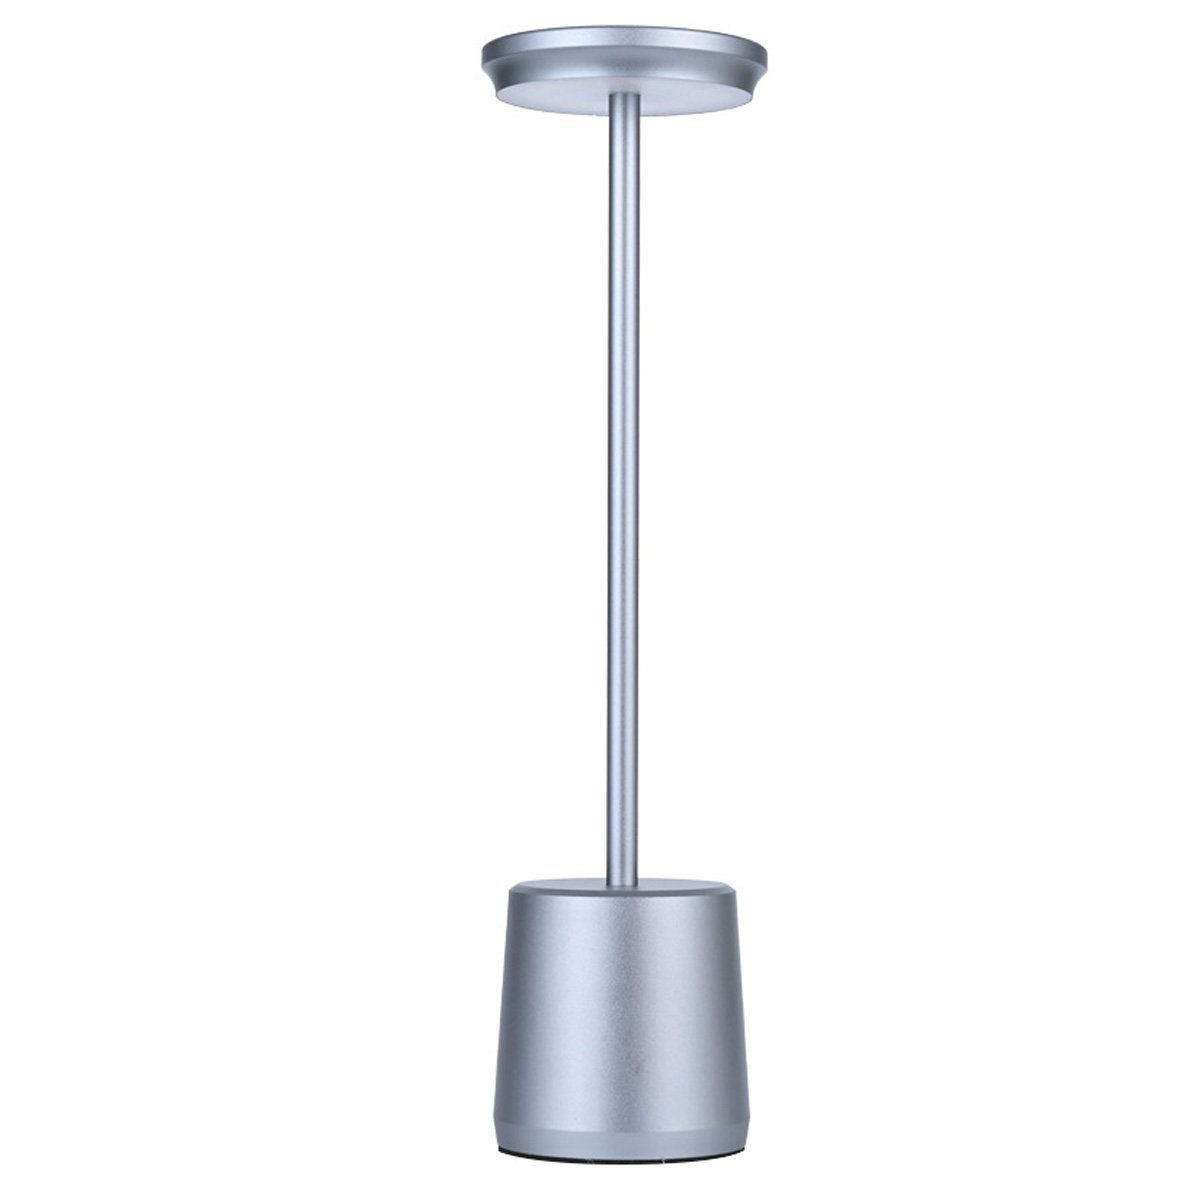 DOPWii LED Schreibtischlampe Aluminium,Dimmbar aus 1.6W Schreibtischlampe,490*340mm Lampenkörper Grau